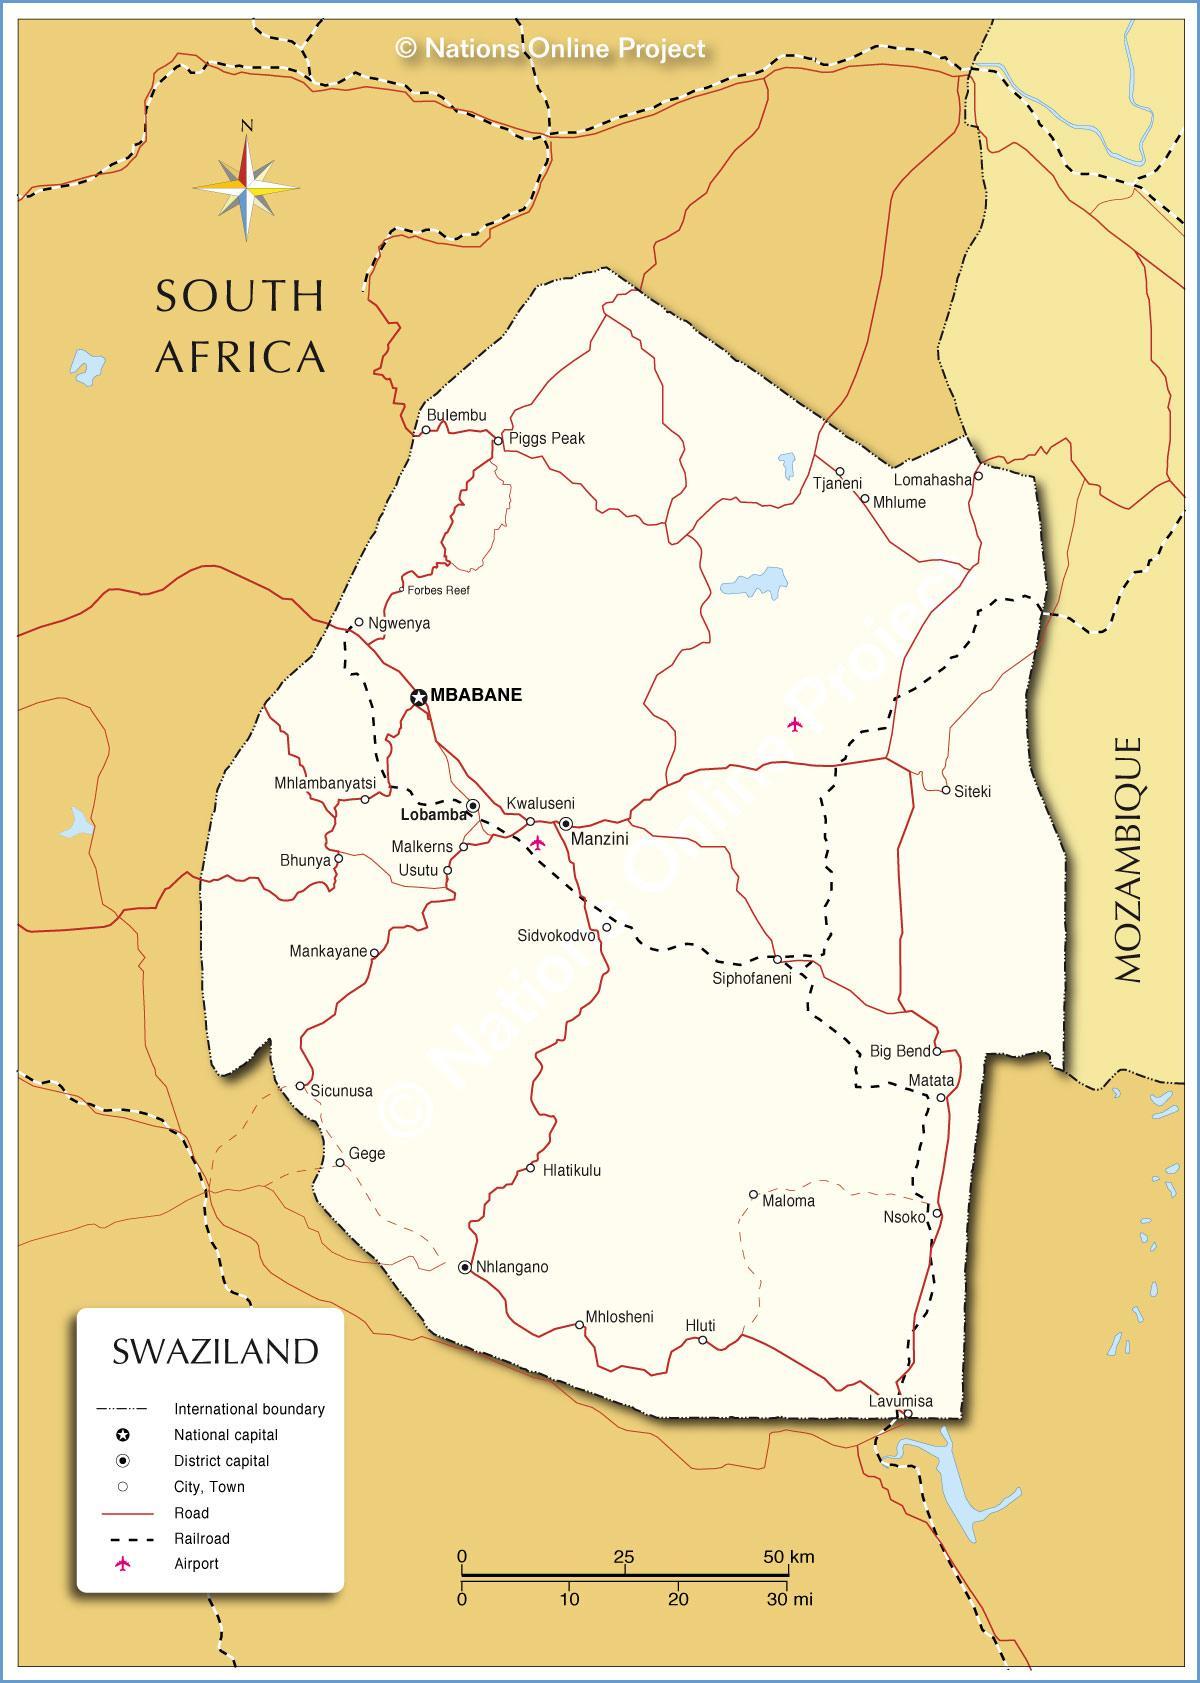 Swaziland kasabaların harita 